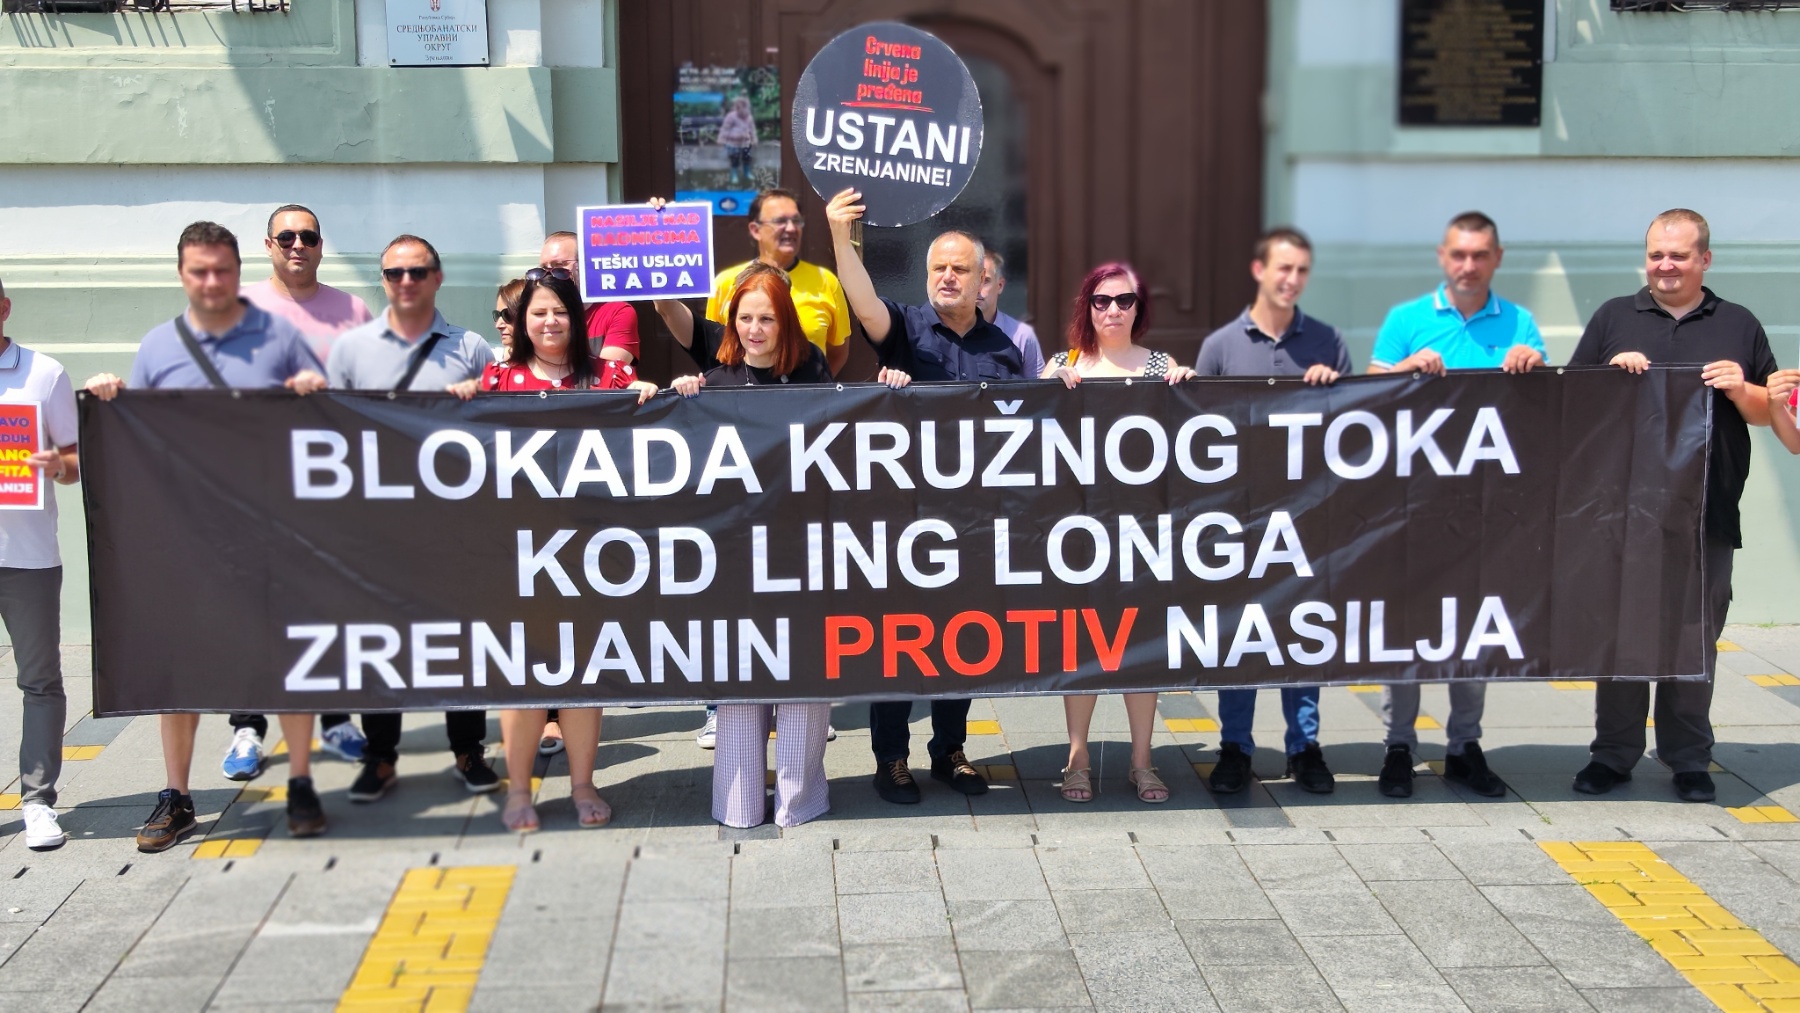 Aktivisti pozvali građane na protest 1. jula, kod Linglonga u Zrenjaninu (VIDEO) 2